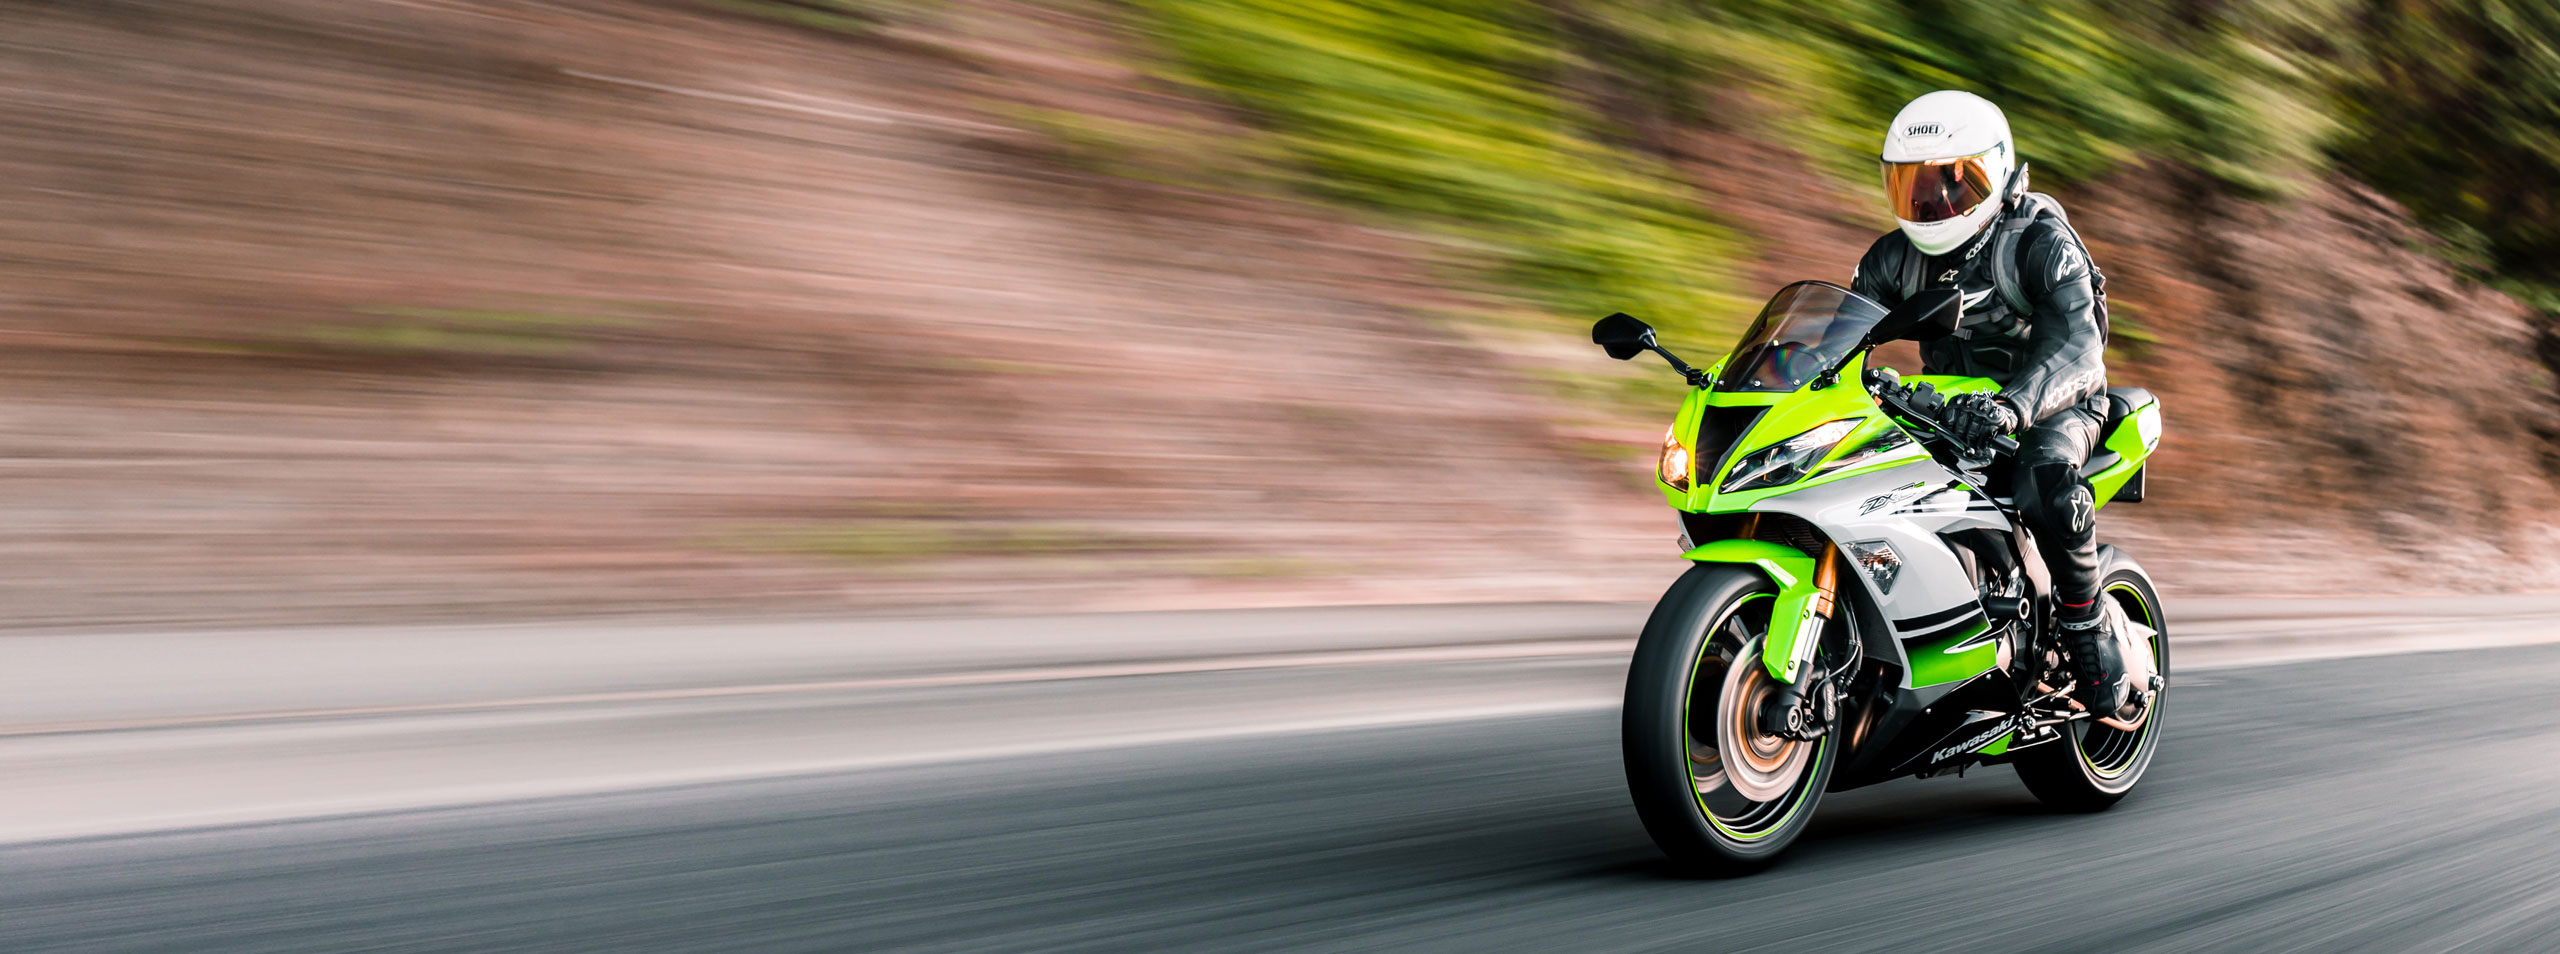 green Kawasaki bike fast